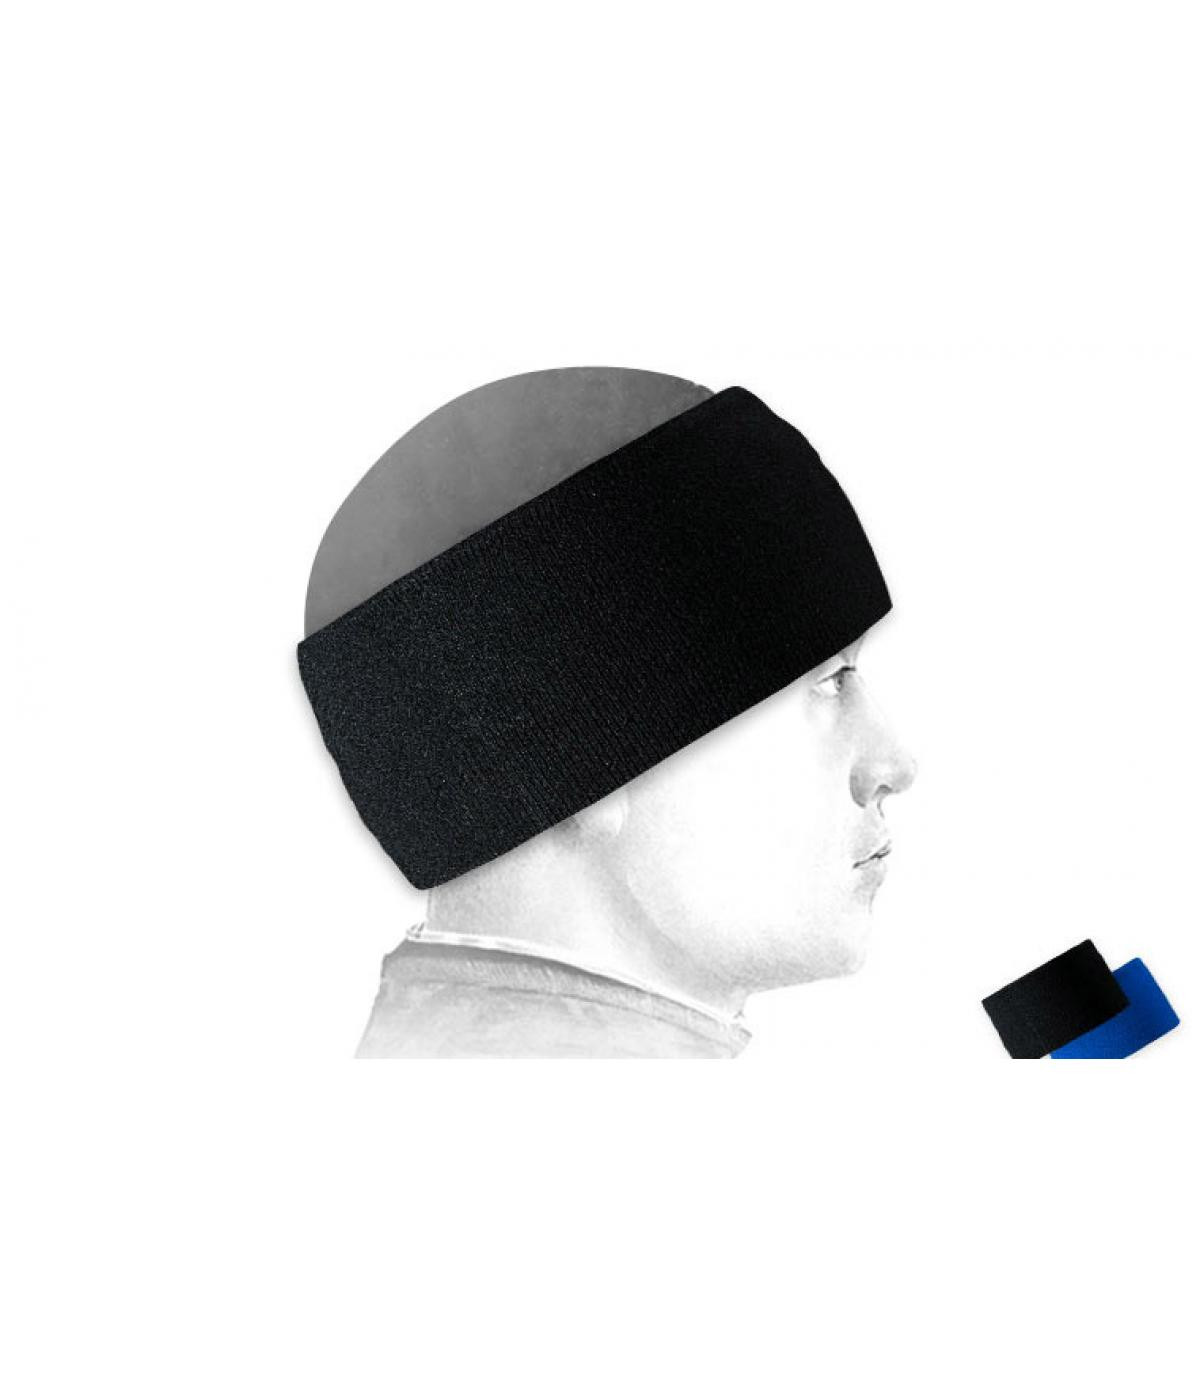 https://www.headict.com/443-large_default/sunrise-headband-black,Bandeau,%20ski,%20noir,%20Sunrise,%20Headband,%20black.jpg